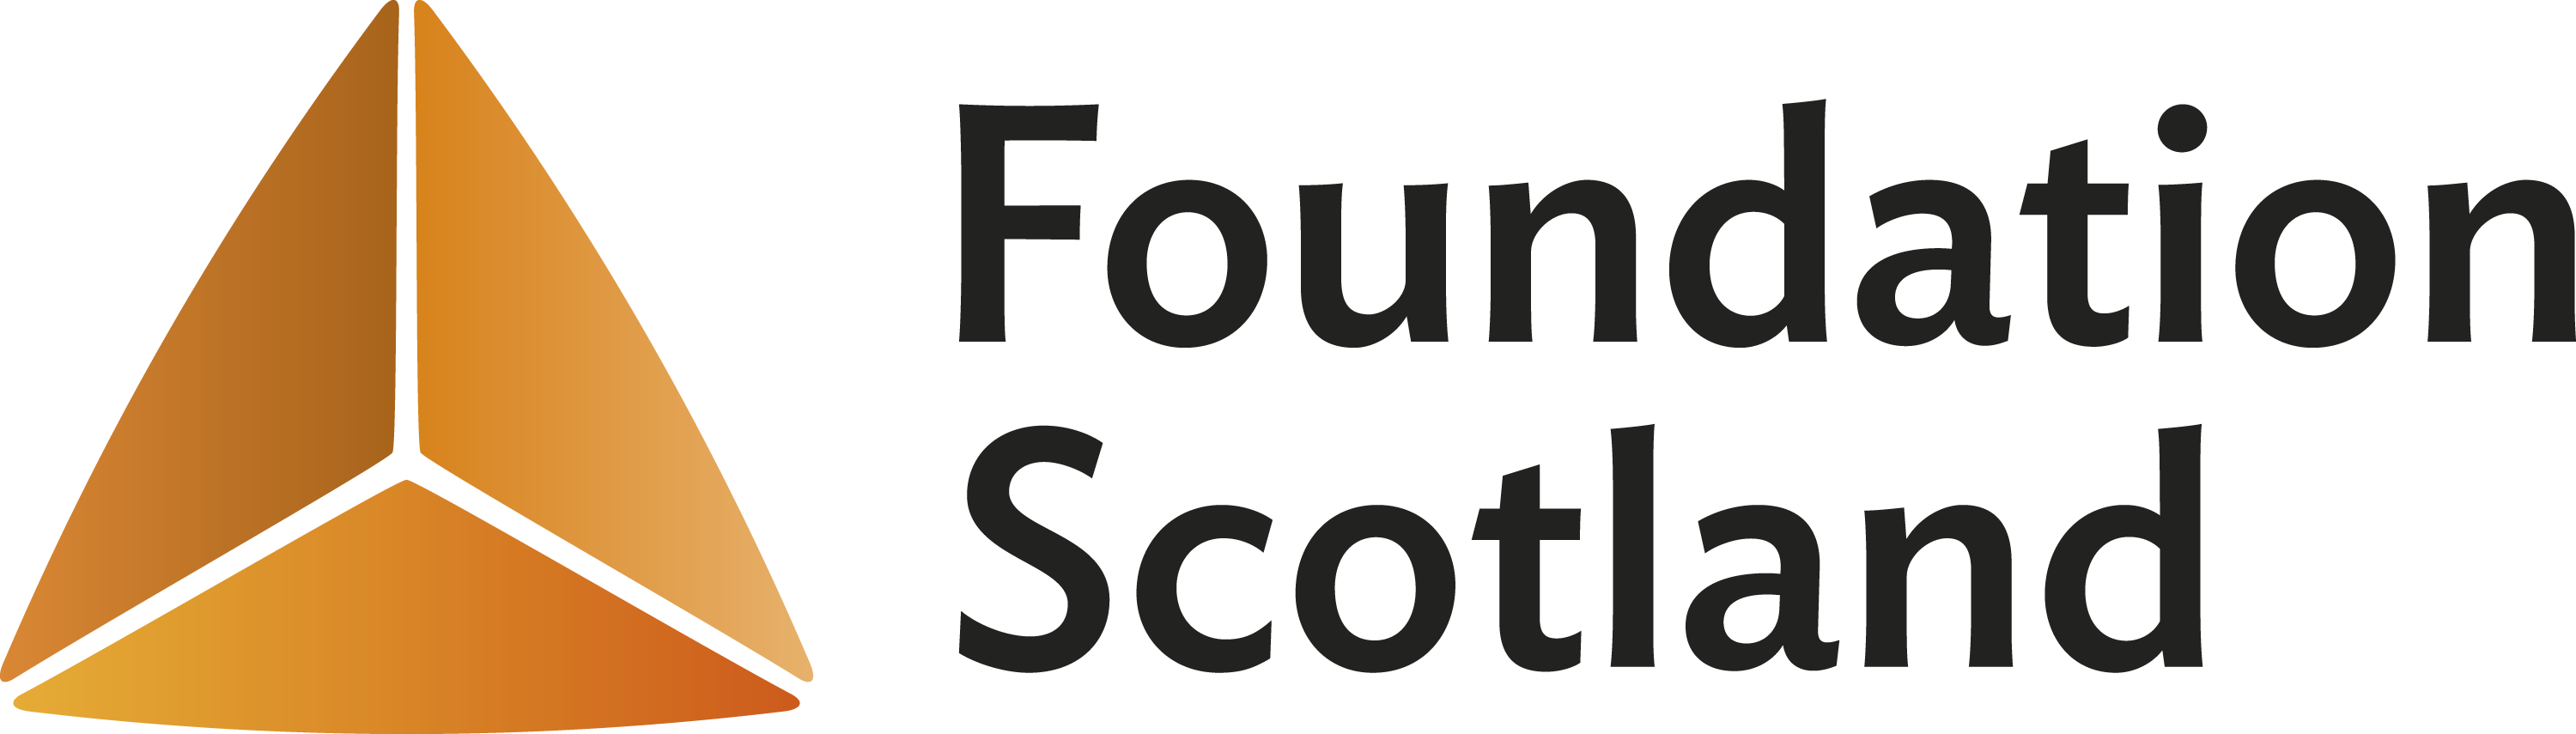 logo for Foundation Scotland